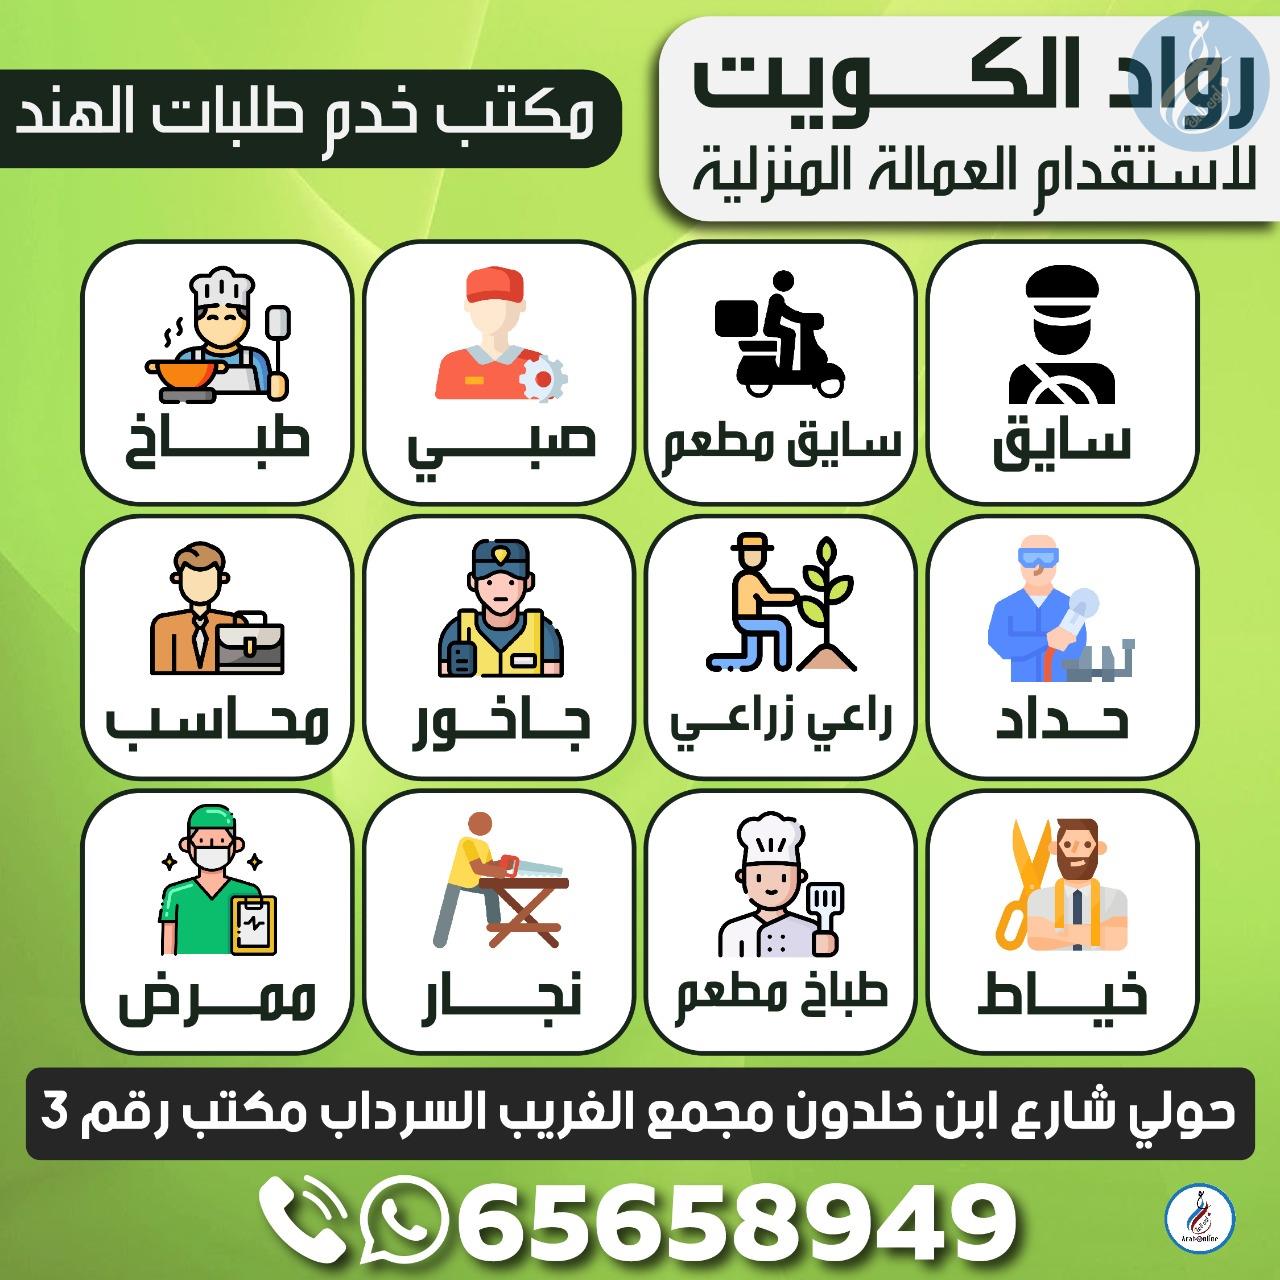 رواد الكويت لاستقدام العمالة المنزلية